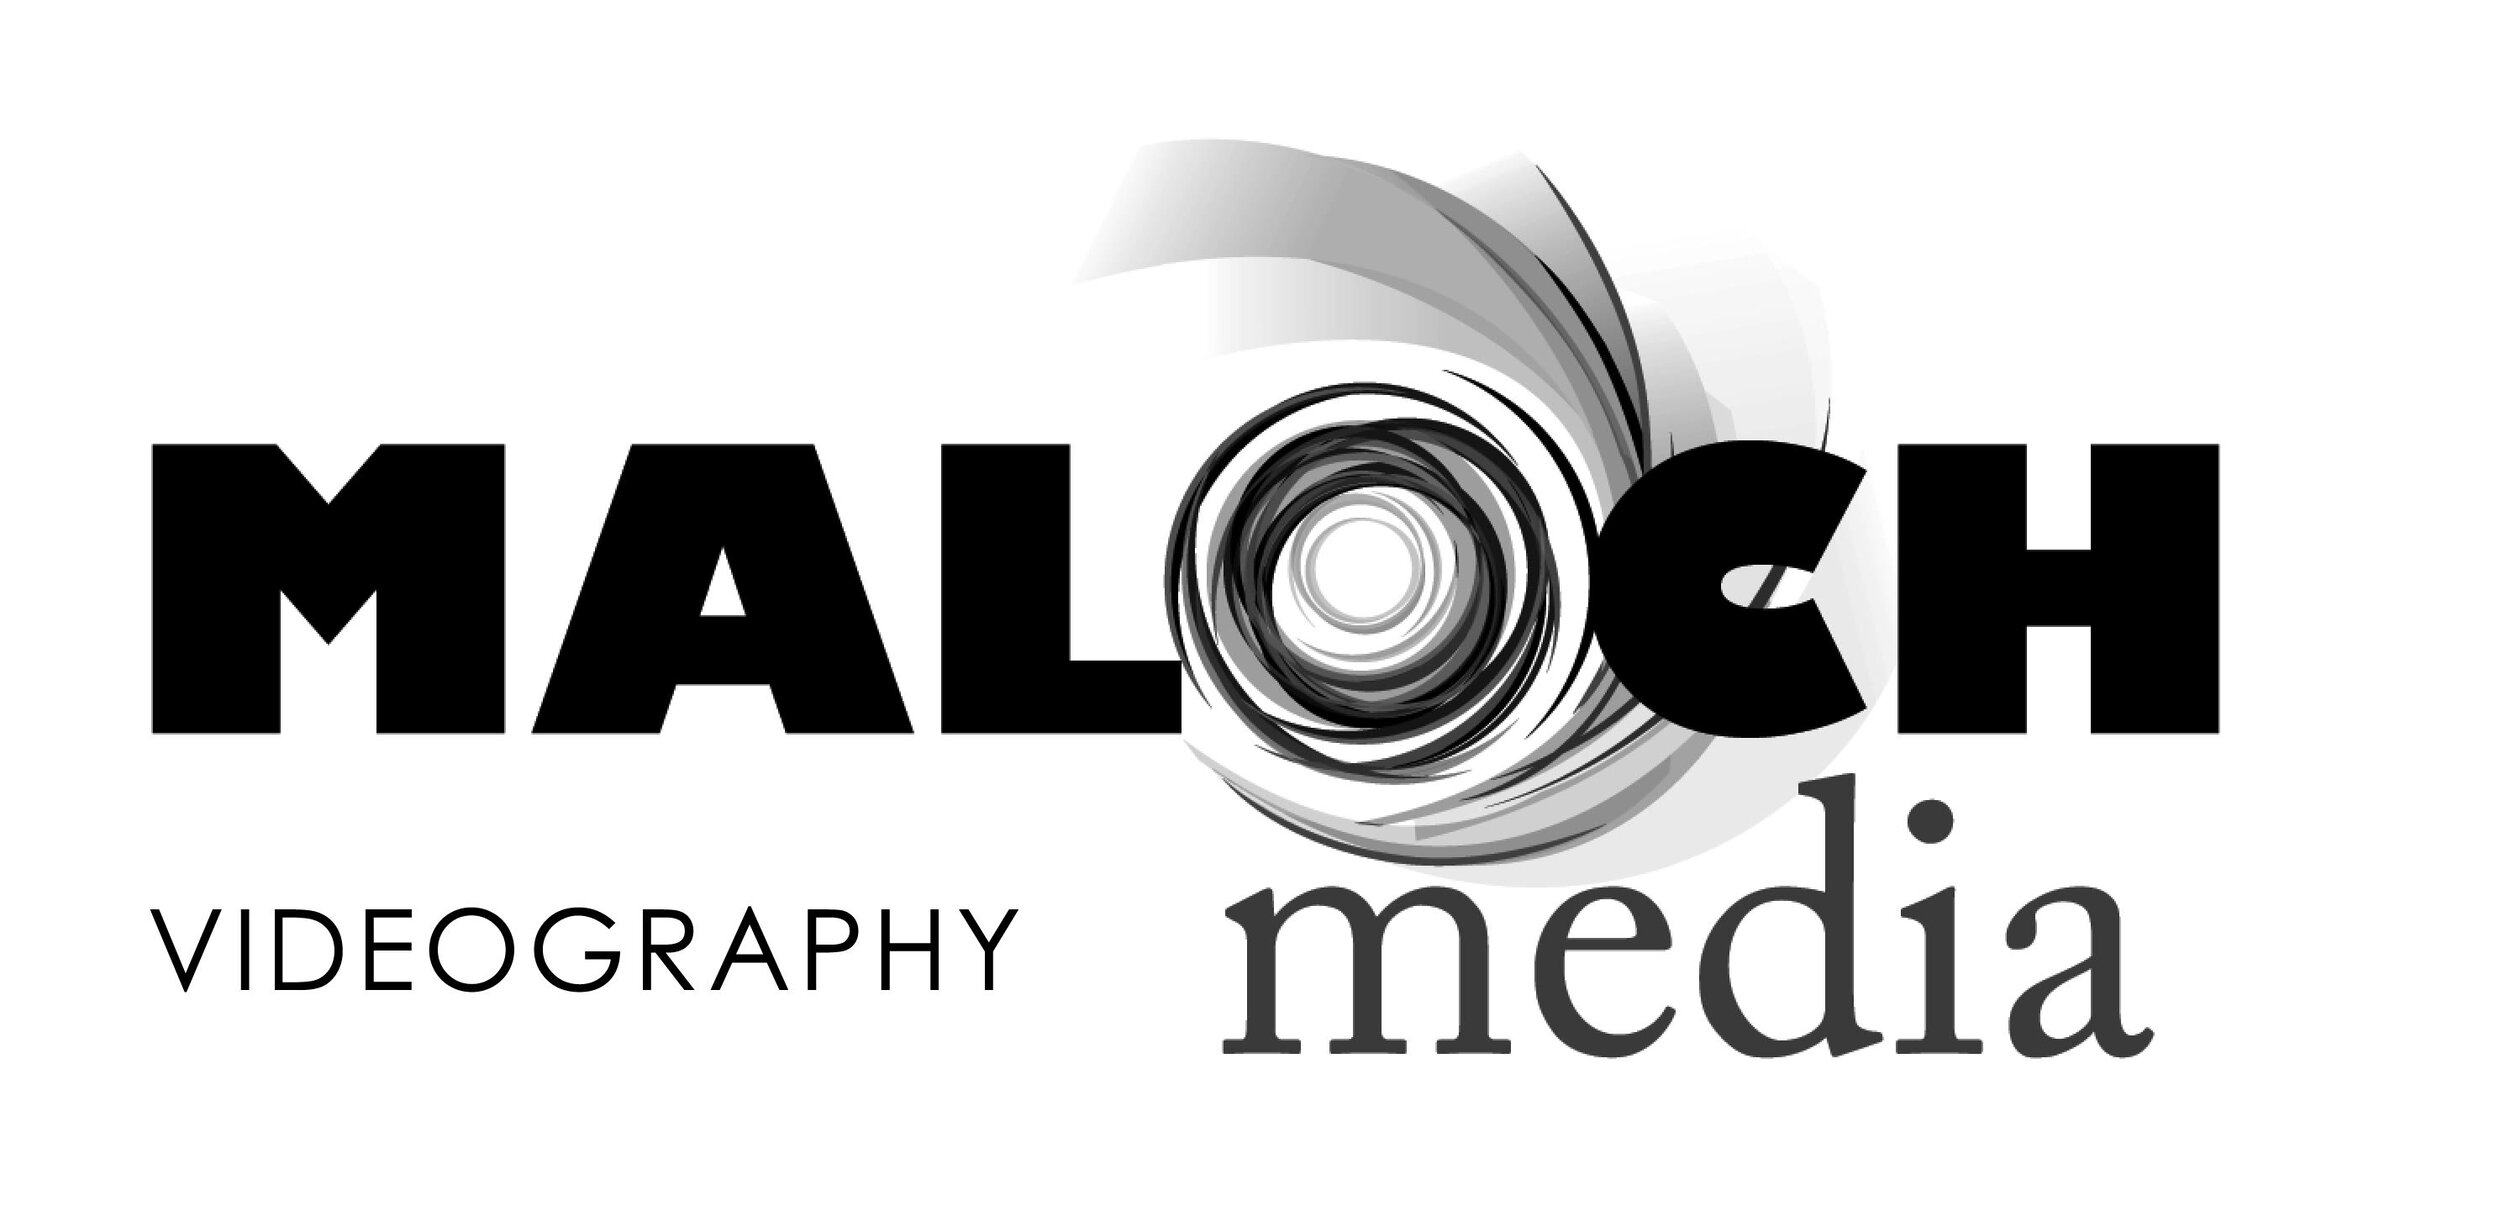 Maloch Media Logo.jpg